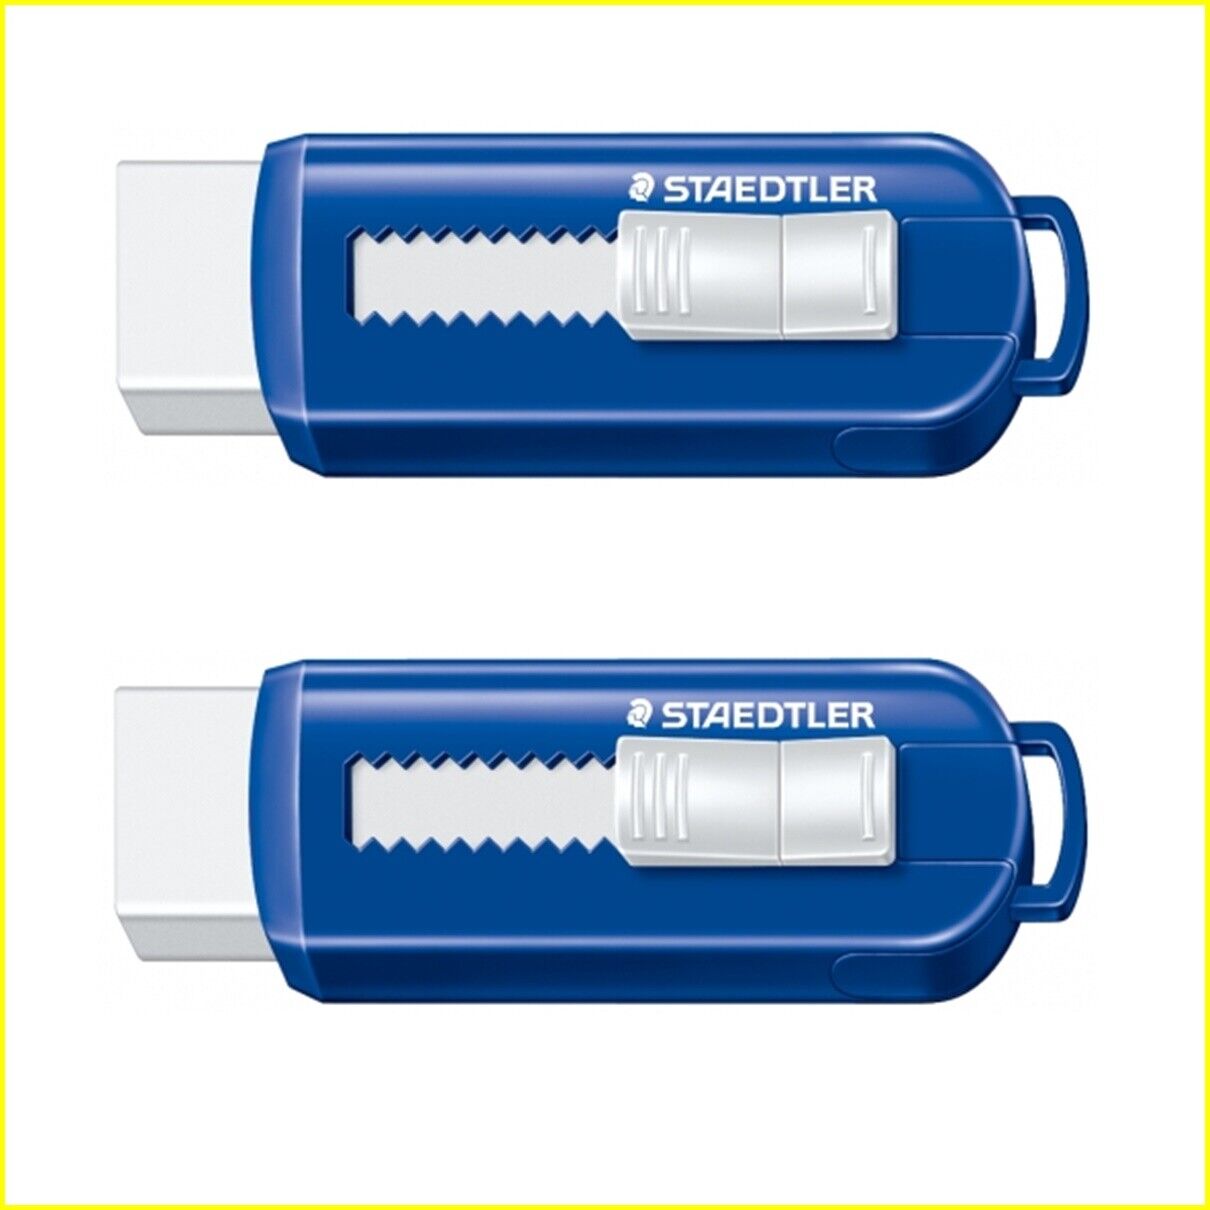 2 x Staedtler Mars Plastic Rubber Eraser with Sliding plastic Holder 525 PS1